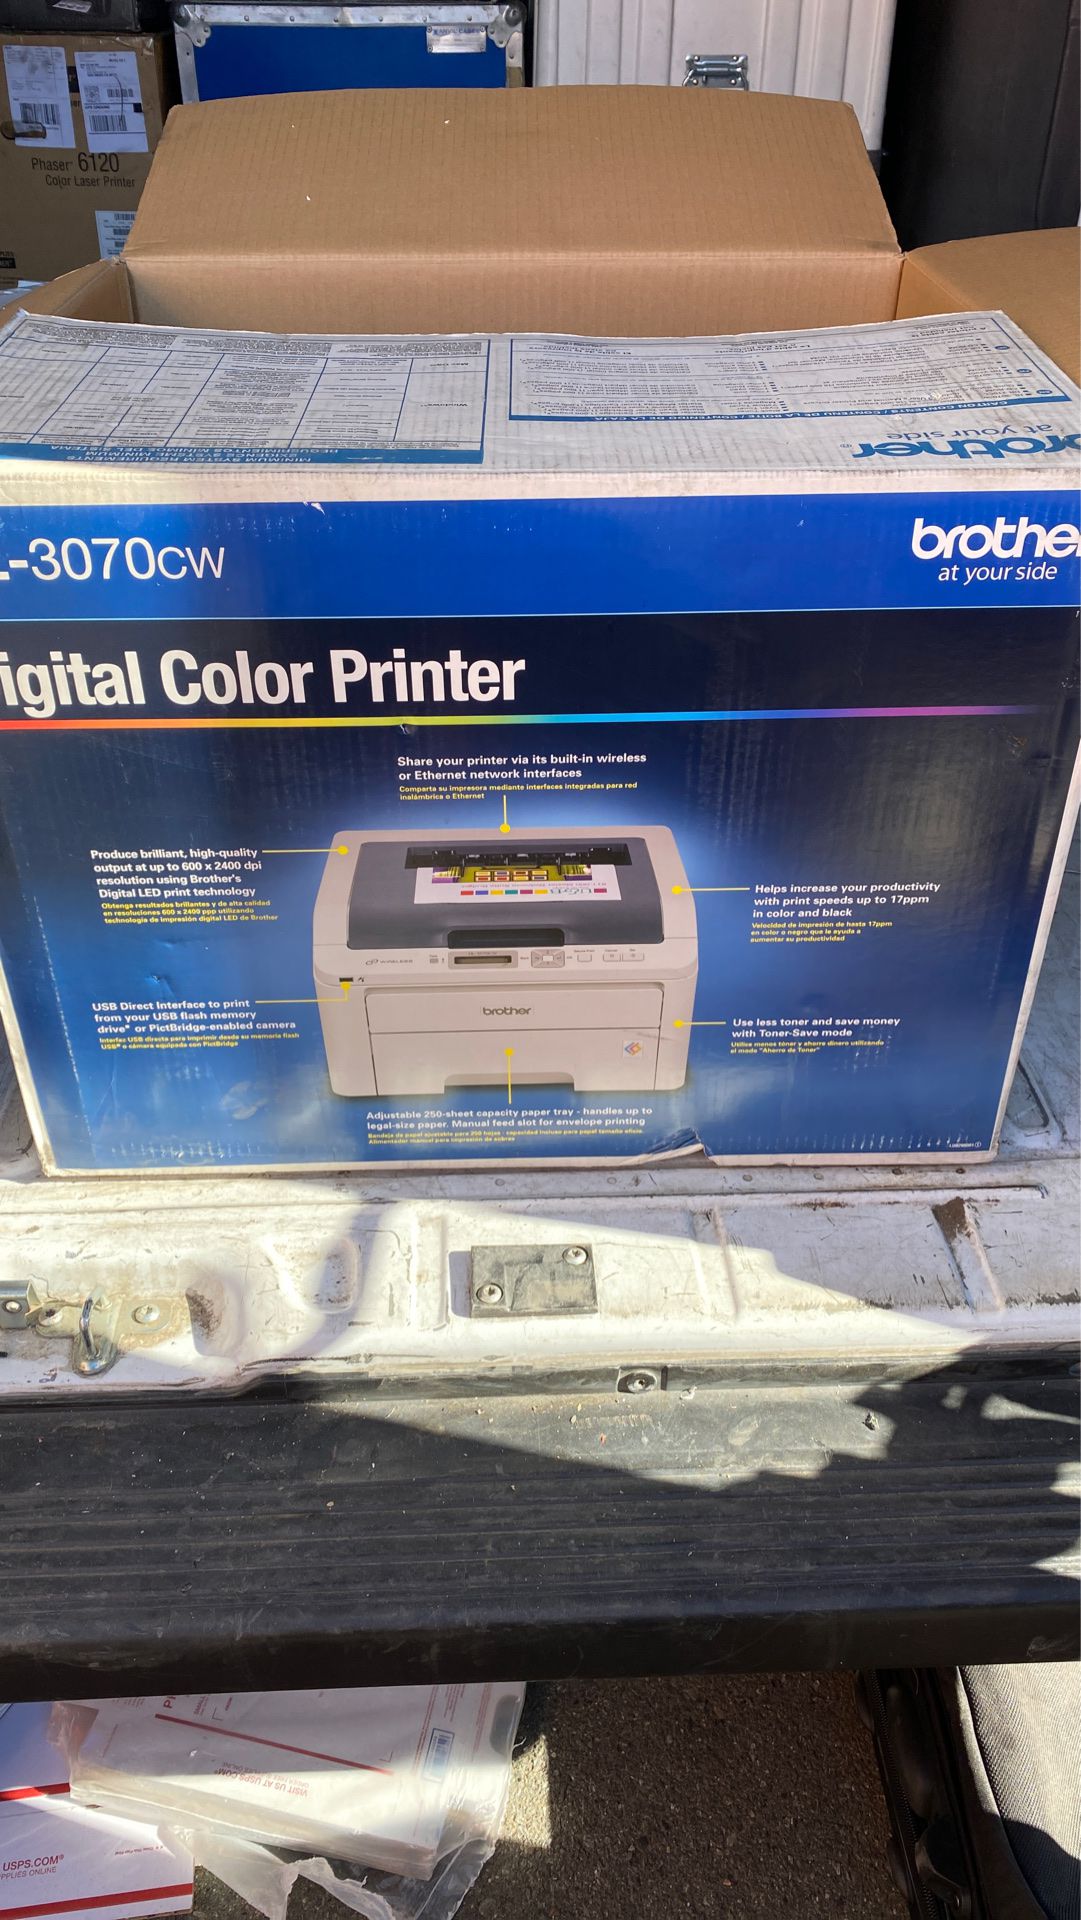 Brother digital color printer HL-370 brand new